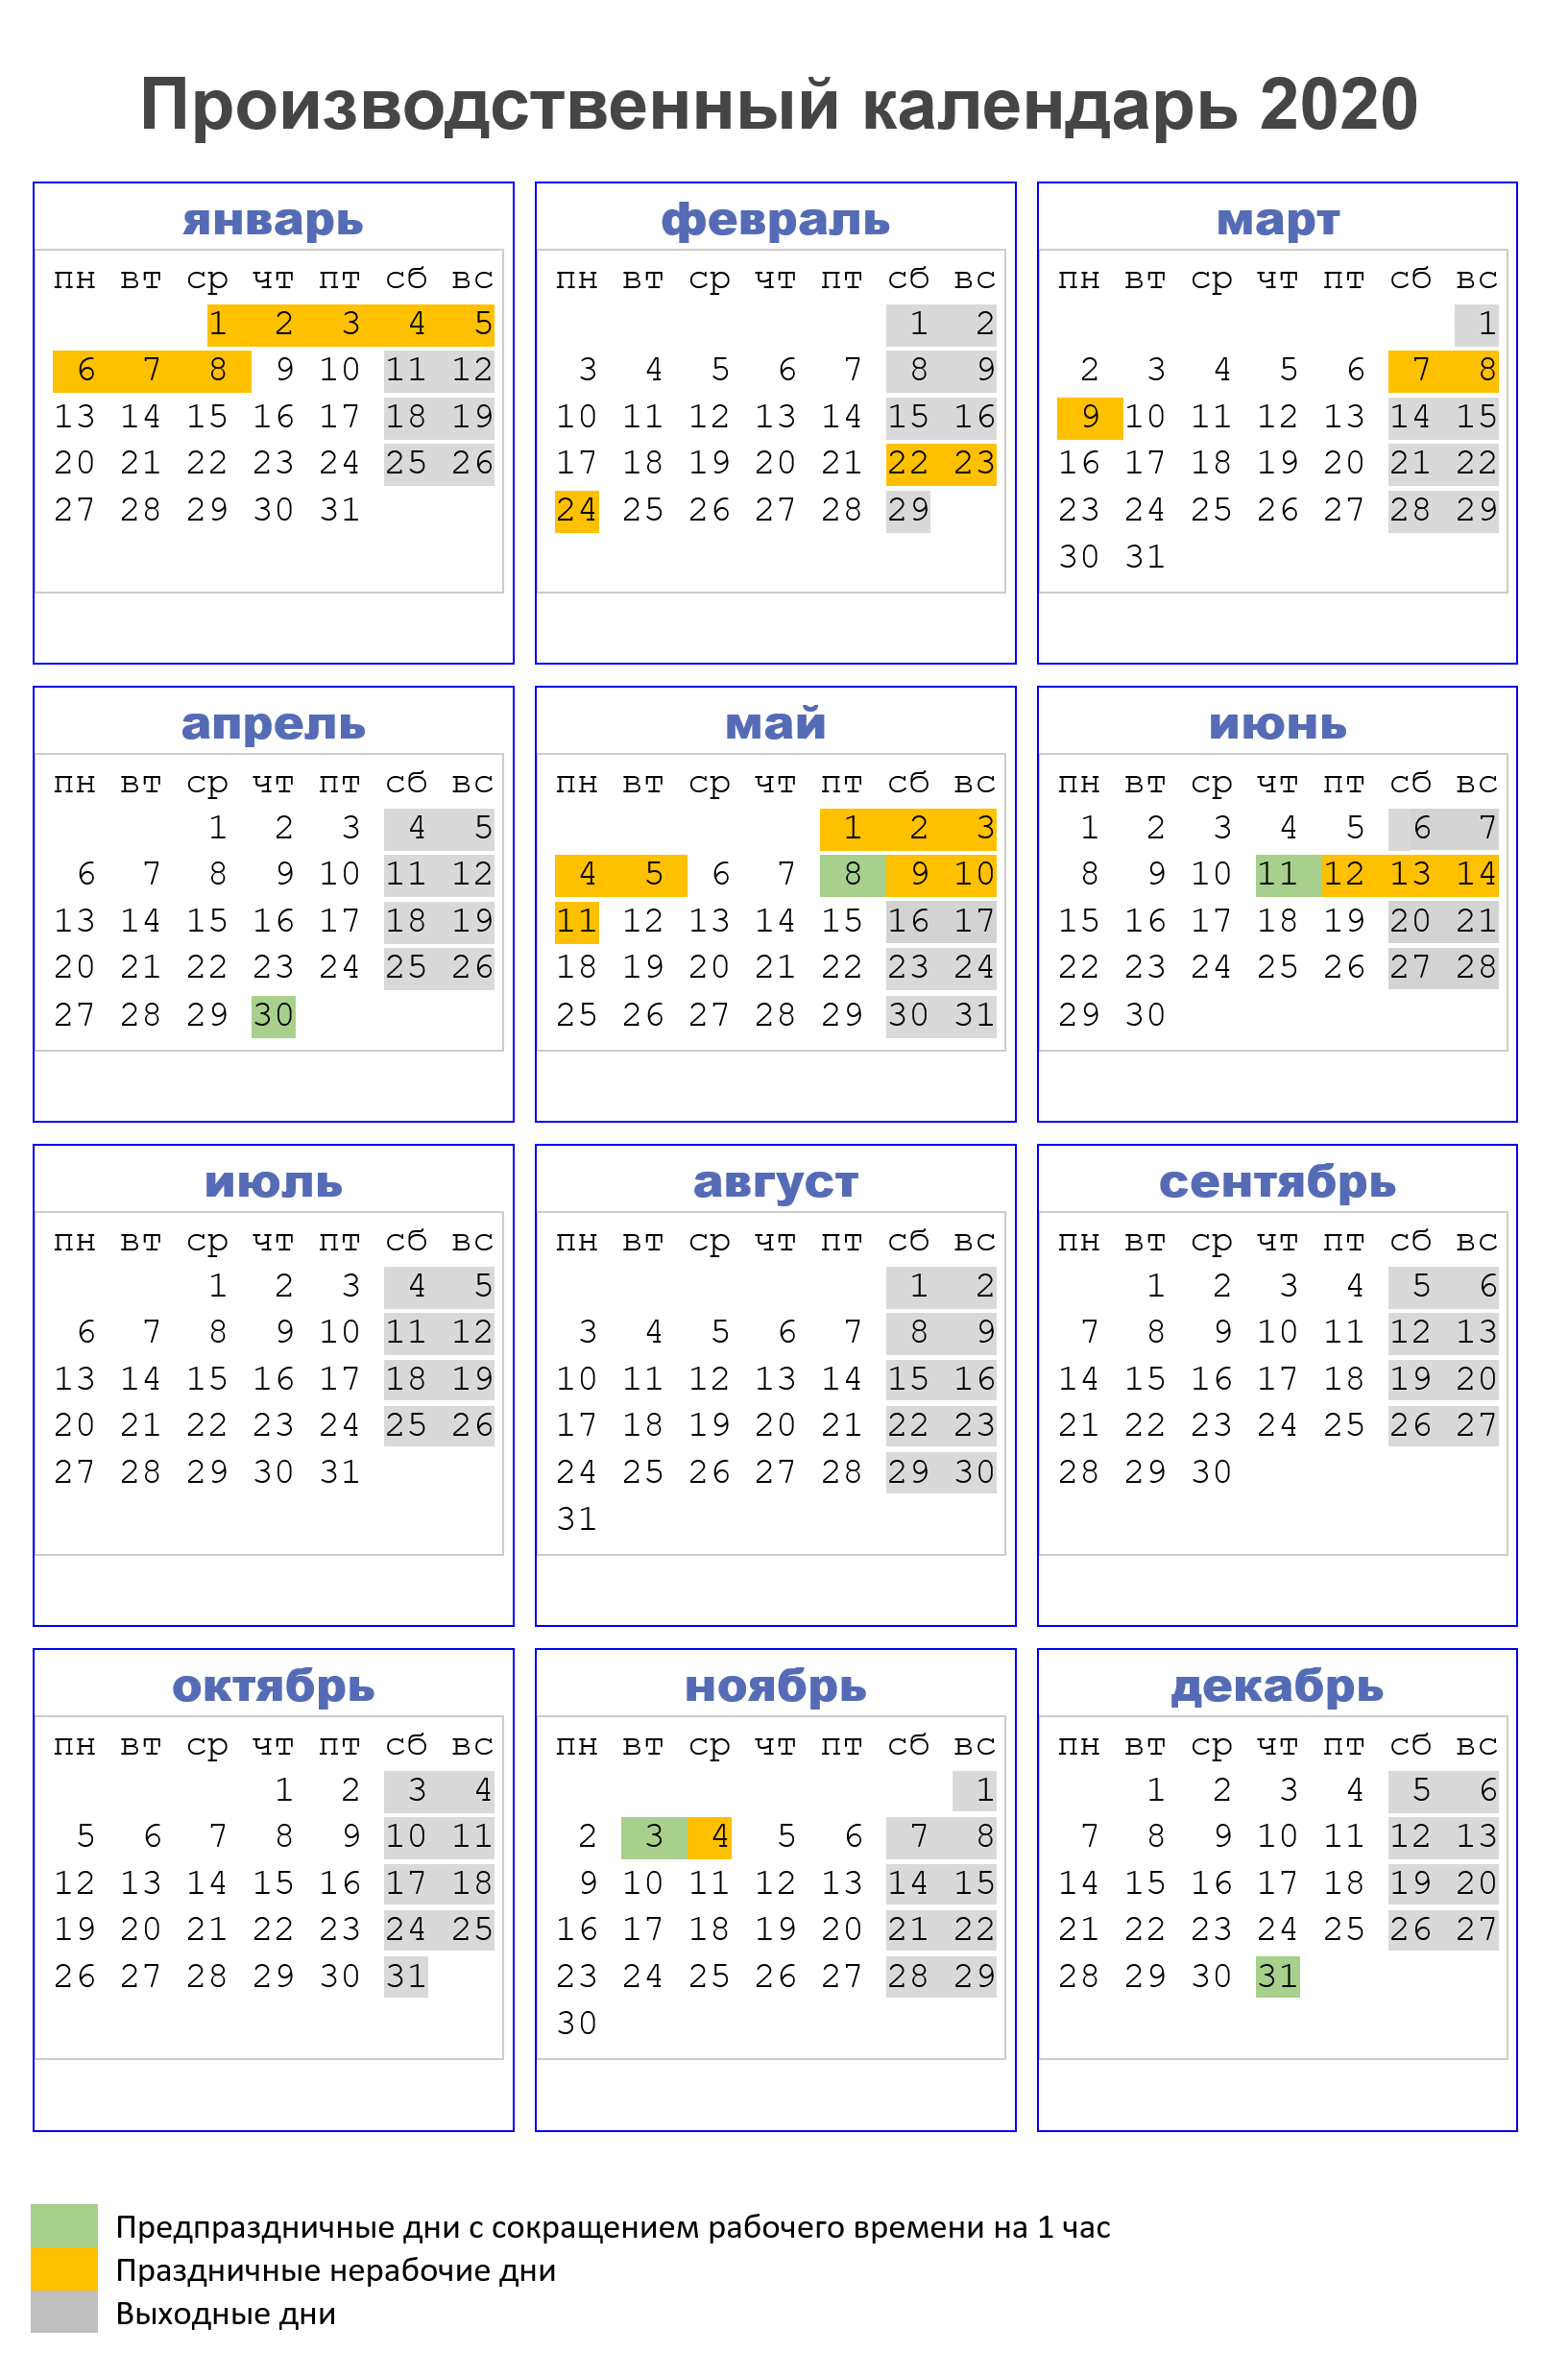 Производственный календарь 2020 с праздниками и выходными